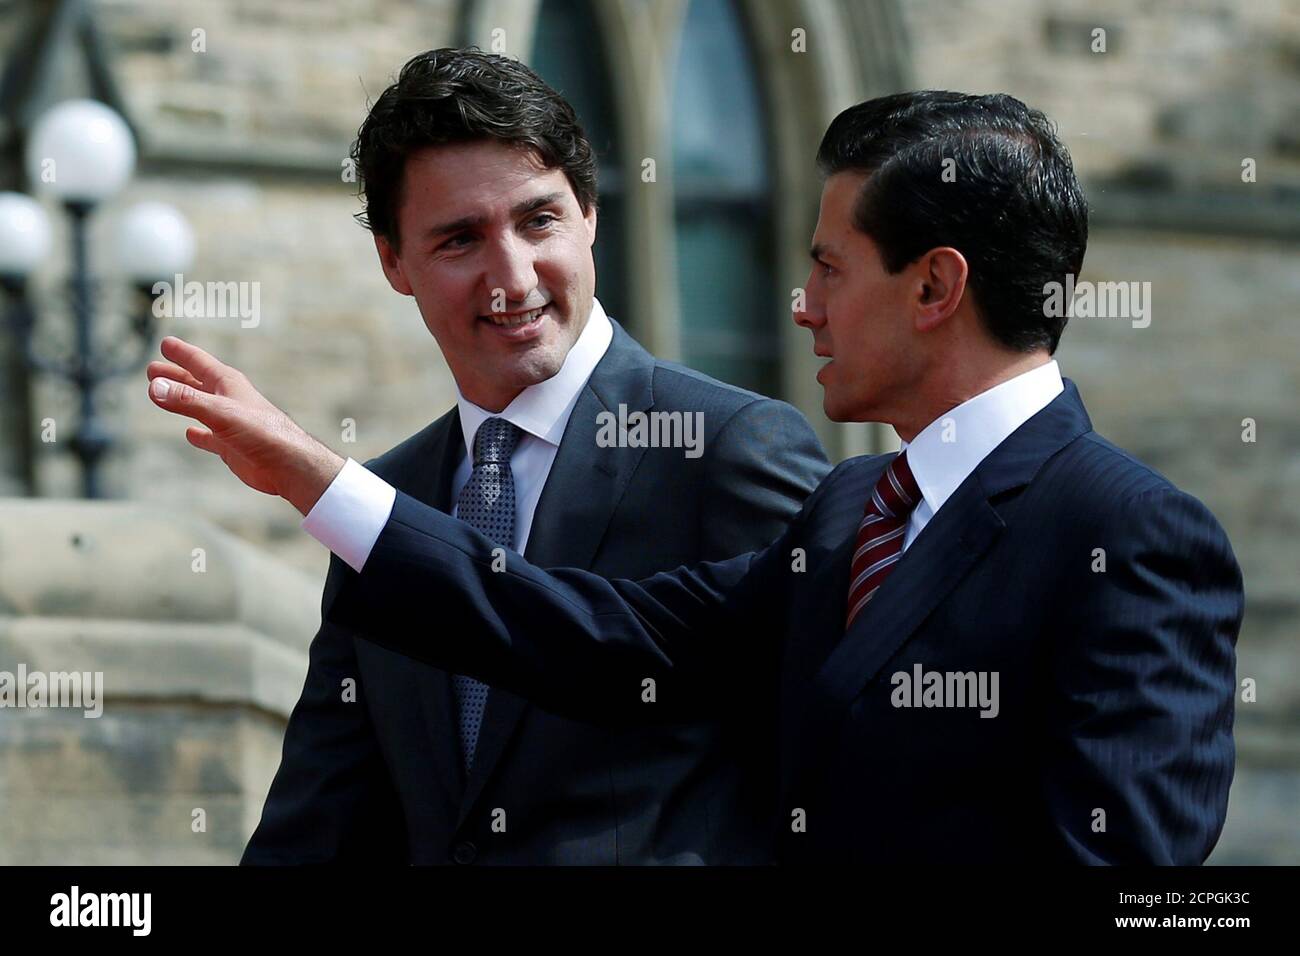 Le premier ministre canadien Justin Trudeau (L) marche avec le président mexicain Enrique Pena Nieto sur la colline du Parlement à Ottawa (Ontario), Canada, le 28 juin 2016. REUTERS/Chris Wattie Banque D'Images